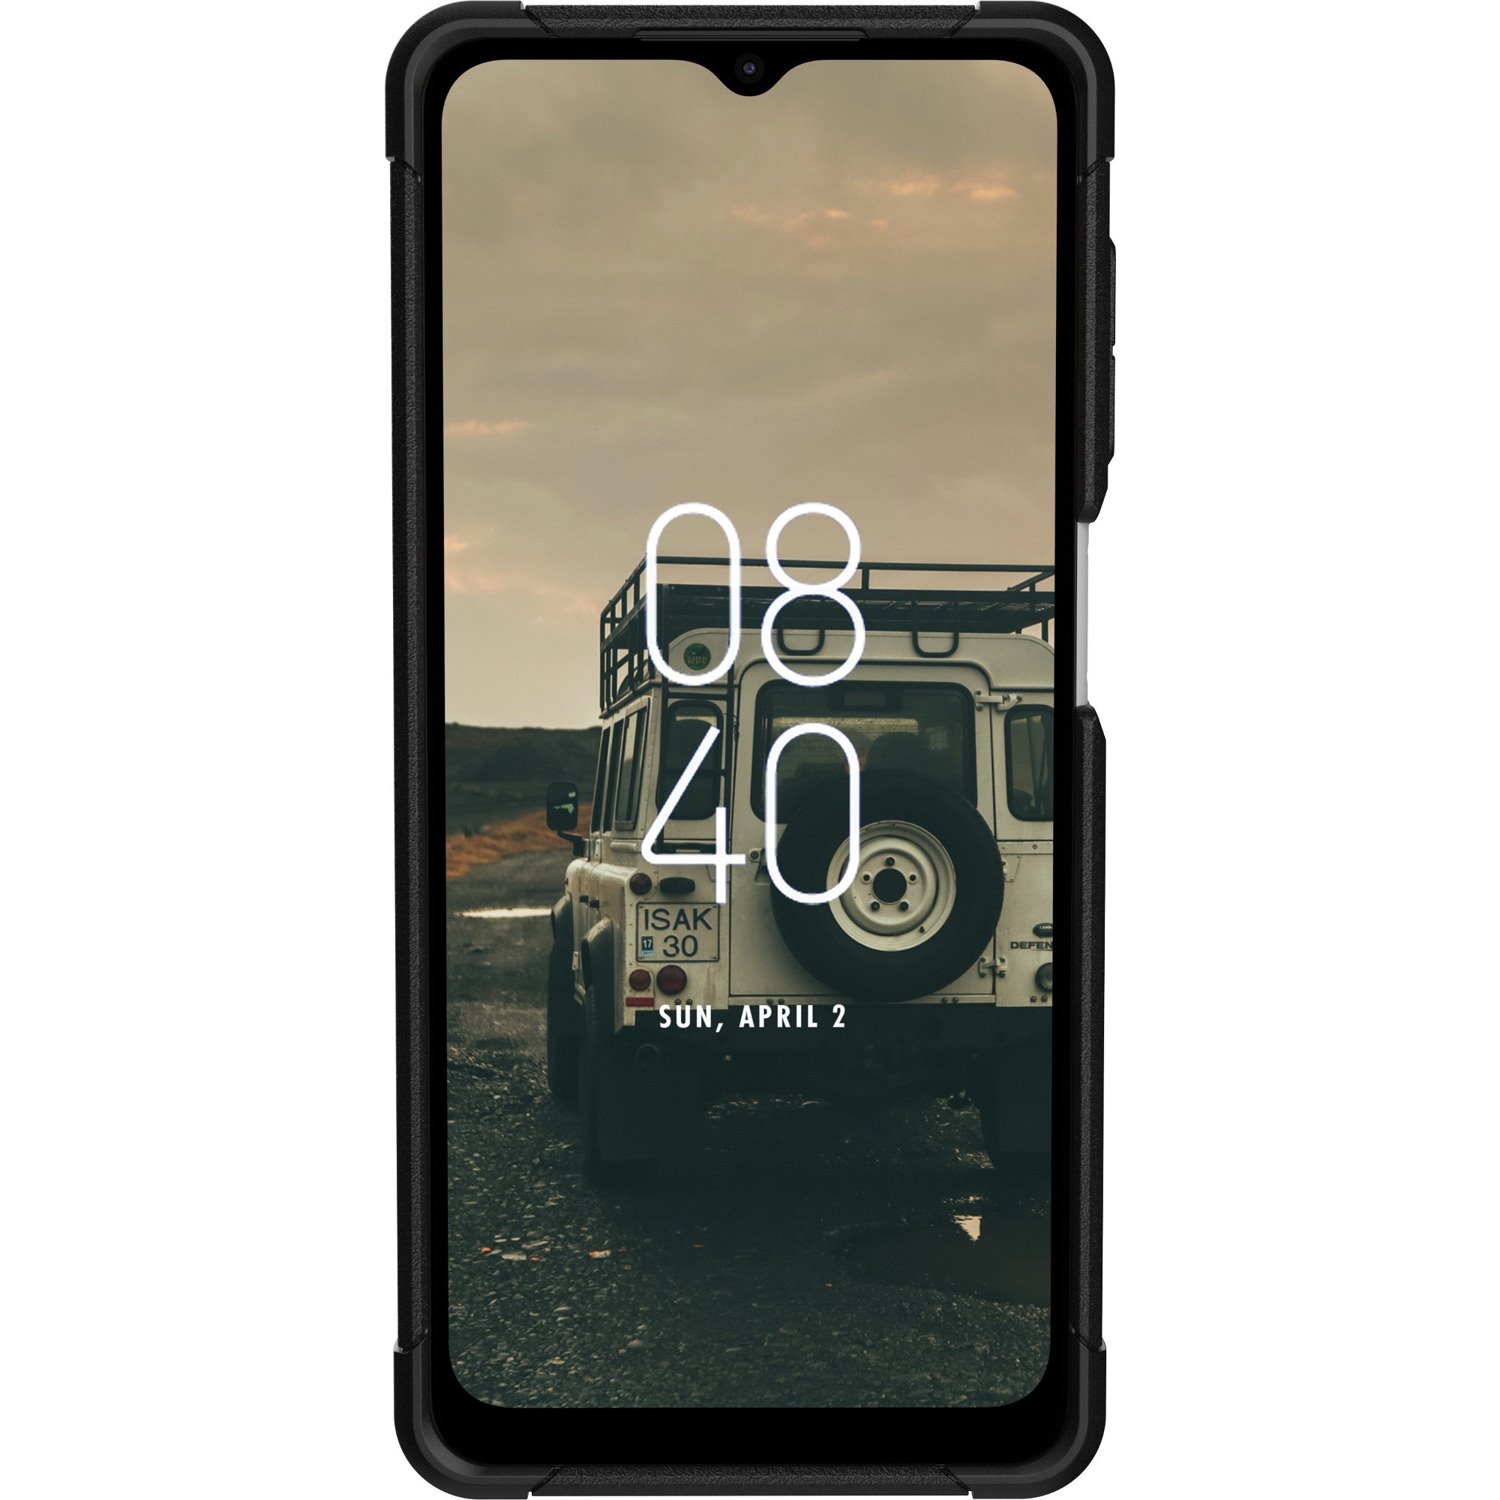 Urban Armor Gear Scout SM-A136U Rugged Case for Samsung Galaxy A13 5G Smartphone - Black